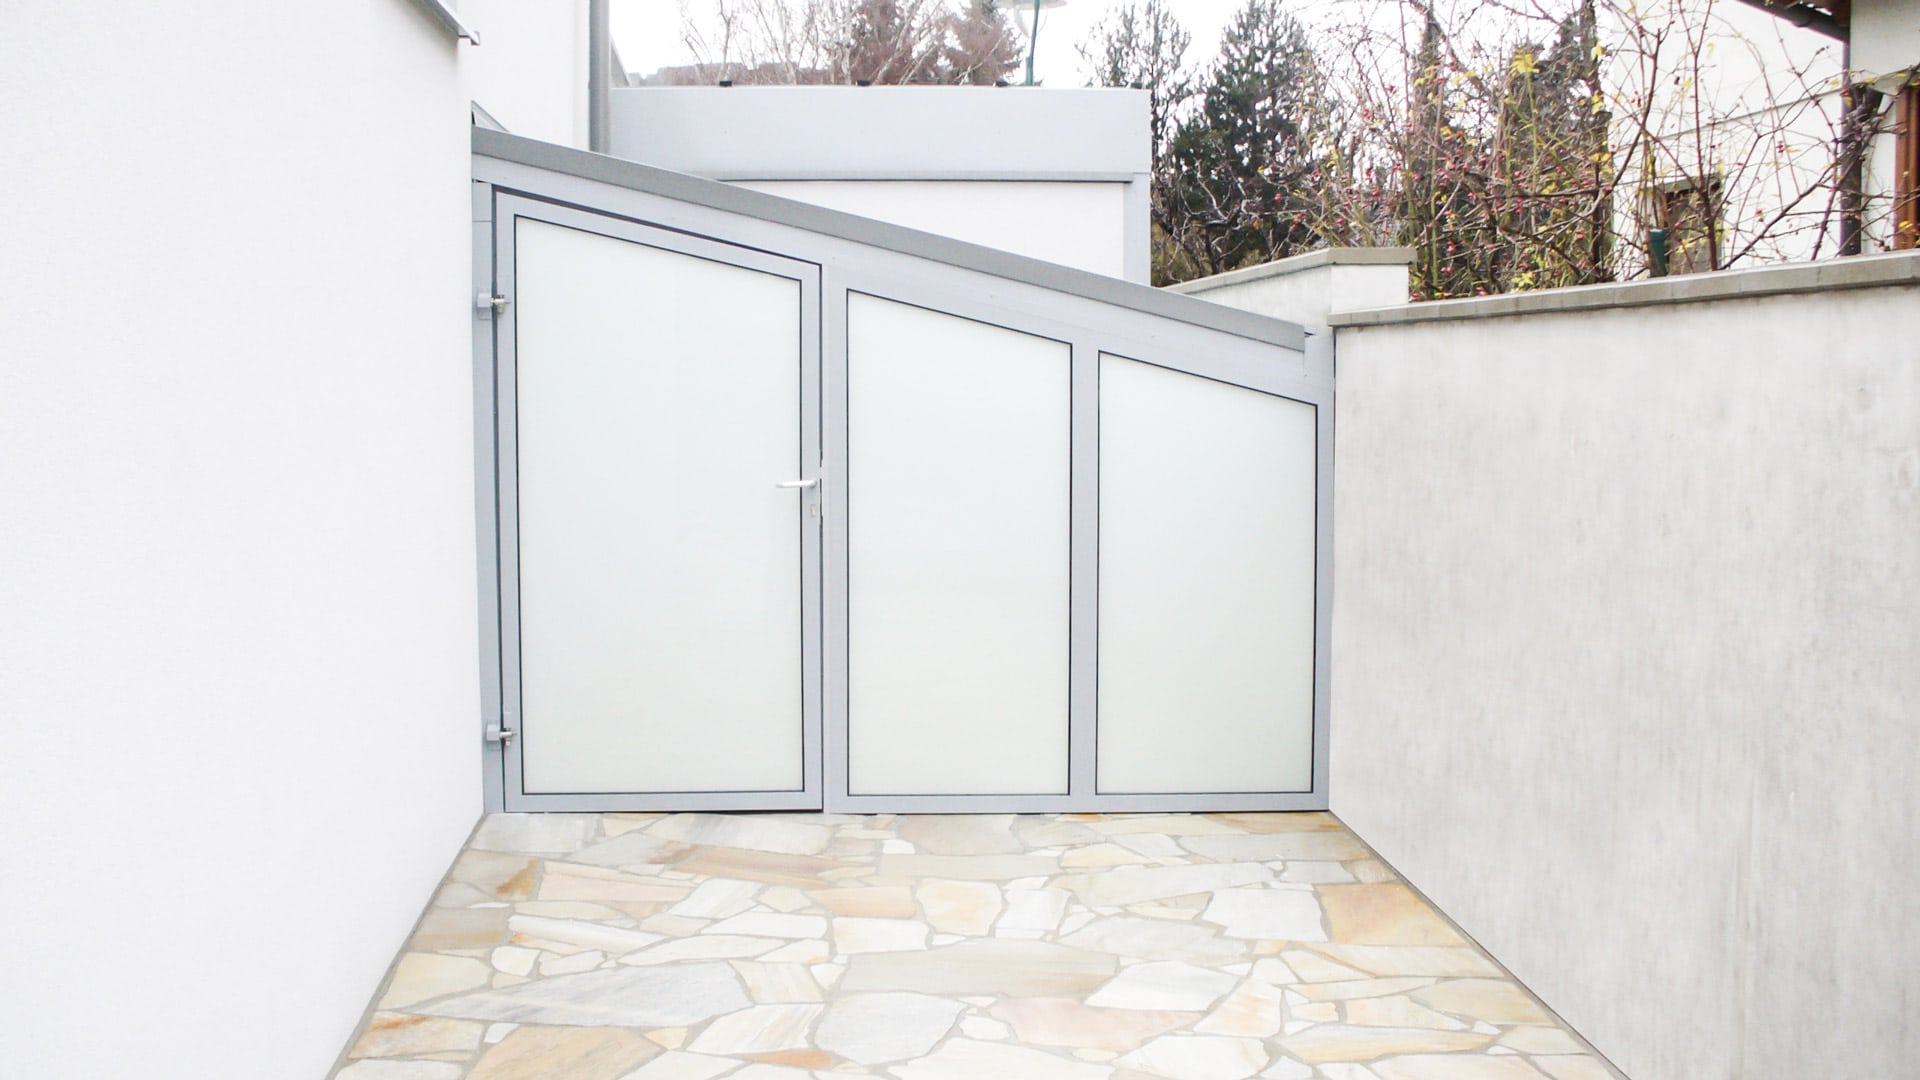 S 01 b | Geräteeinhausung aus grauem Alu und Fixglas mit Tür zwischen Haus und Gartenmauer | Svoboda